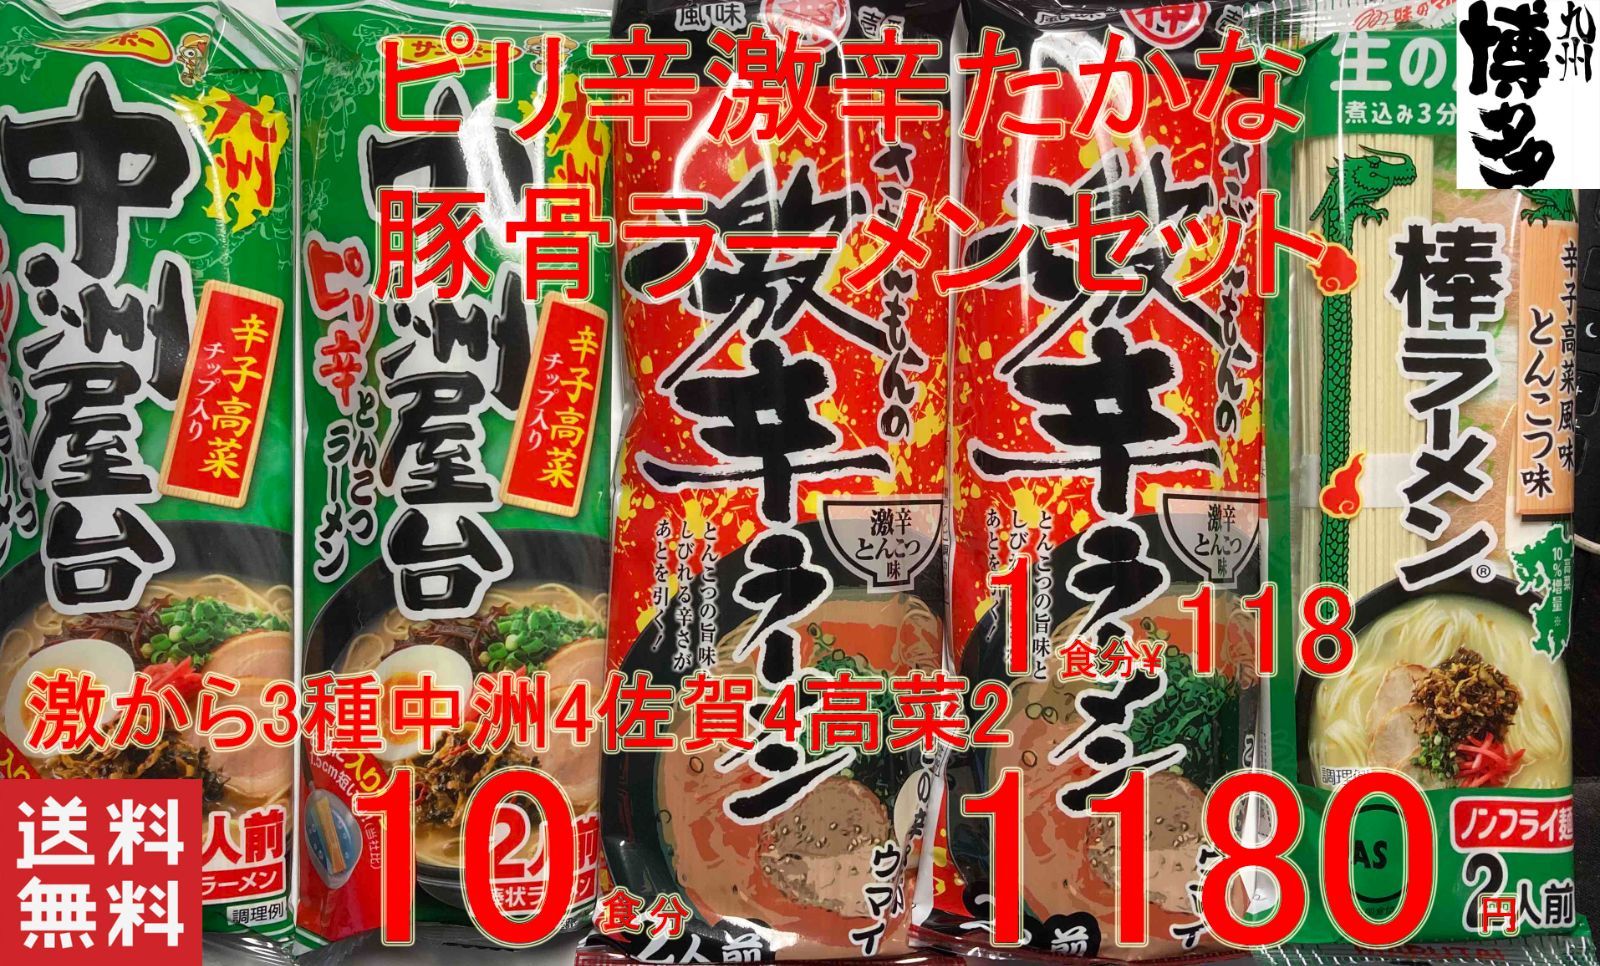 激辛ピリ辛豚骨ラーメンセット 3種 - 博多ラーメン専門店 - メルカリ